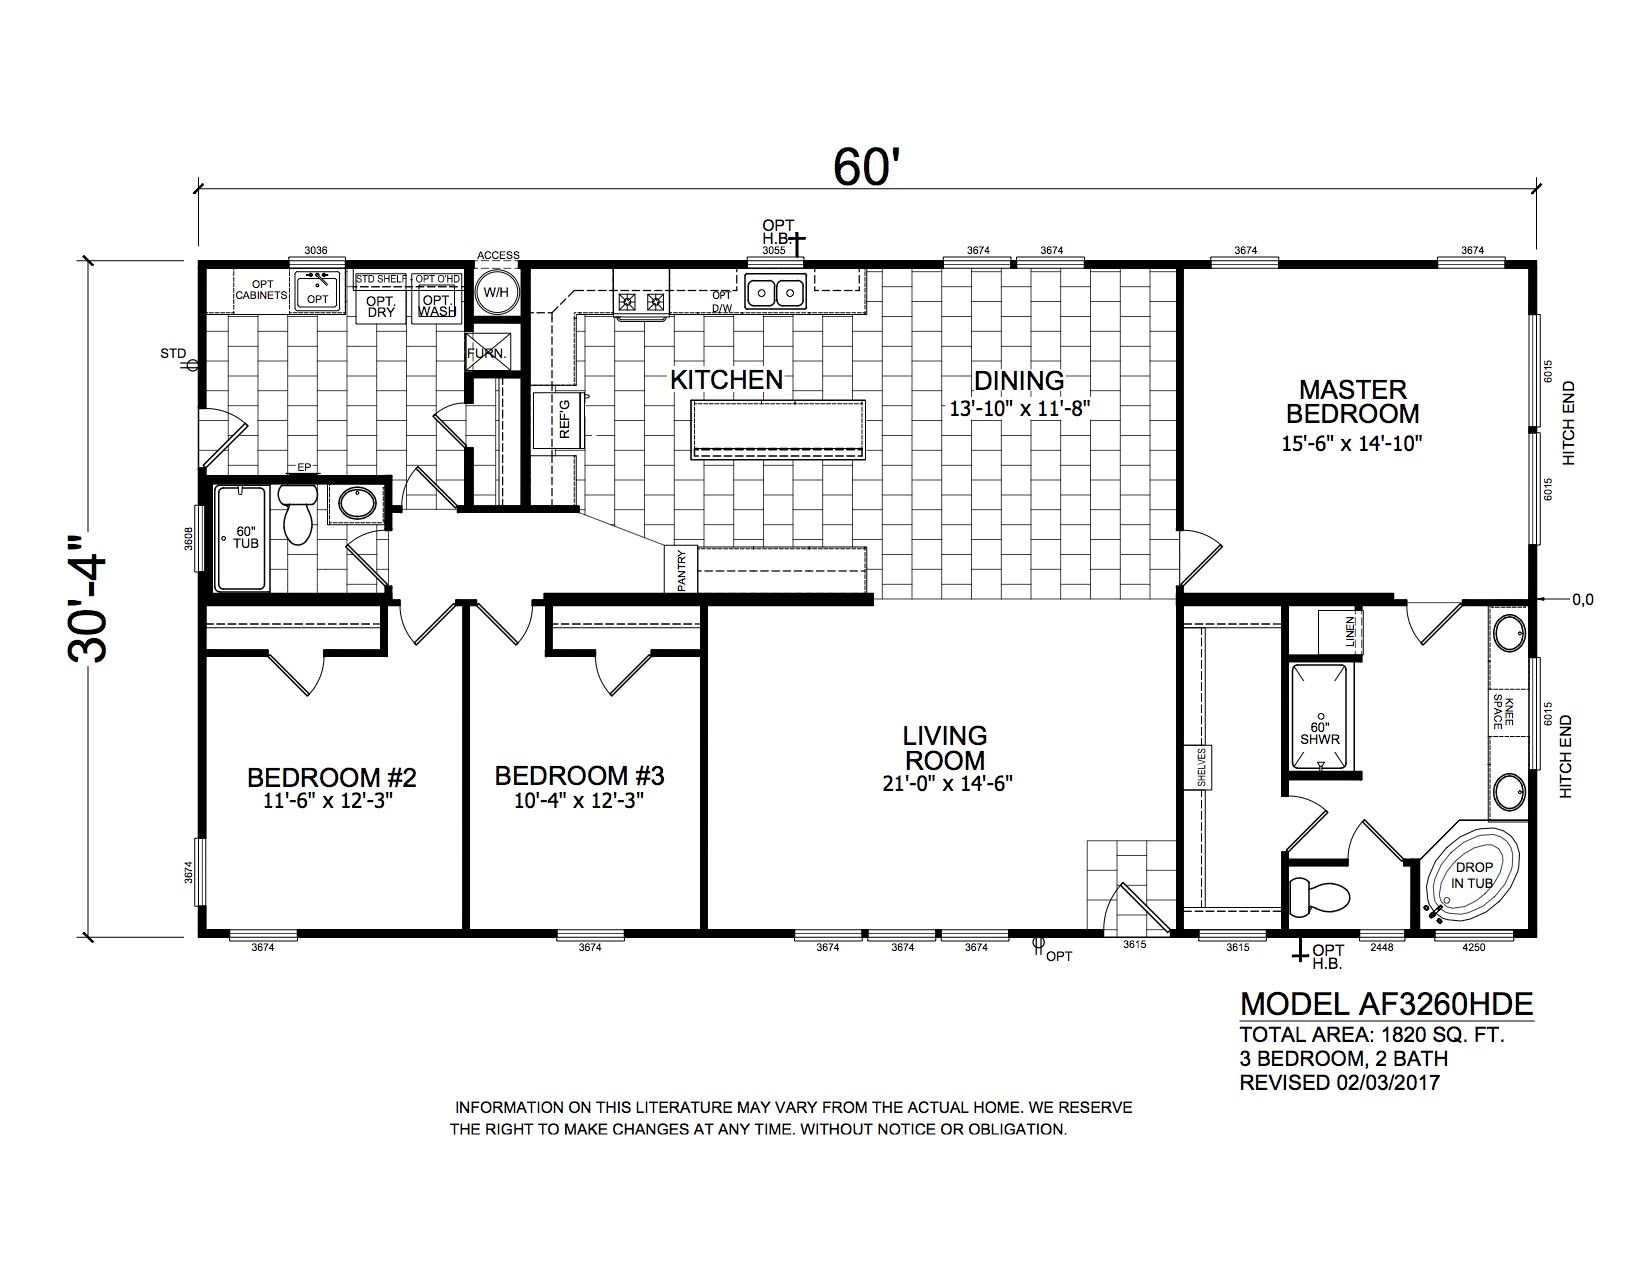 Homes Direct Modular Homes - Model AF3260HDE - Floorplan